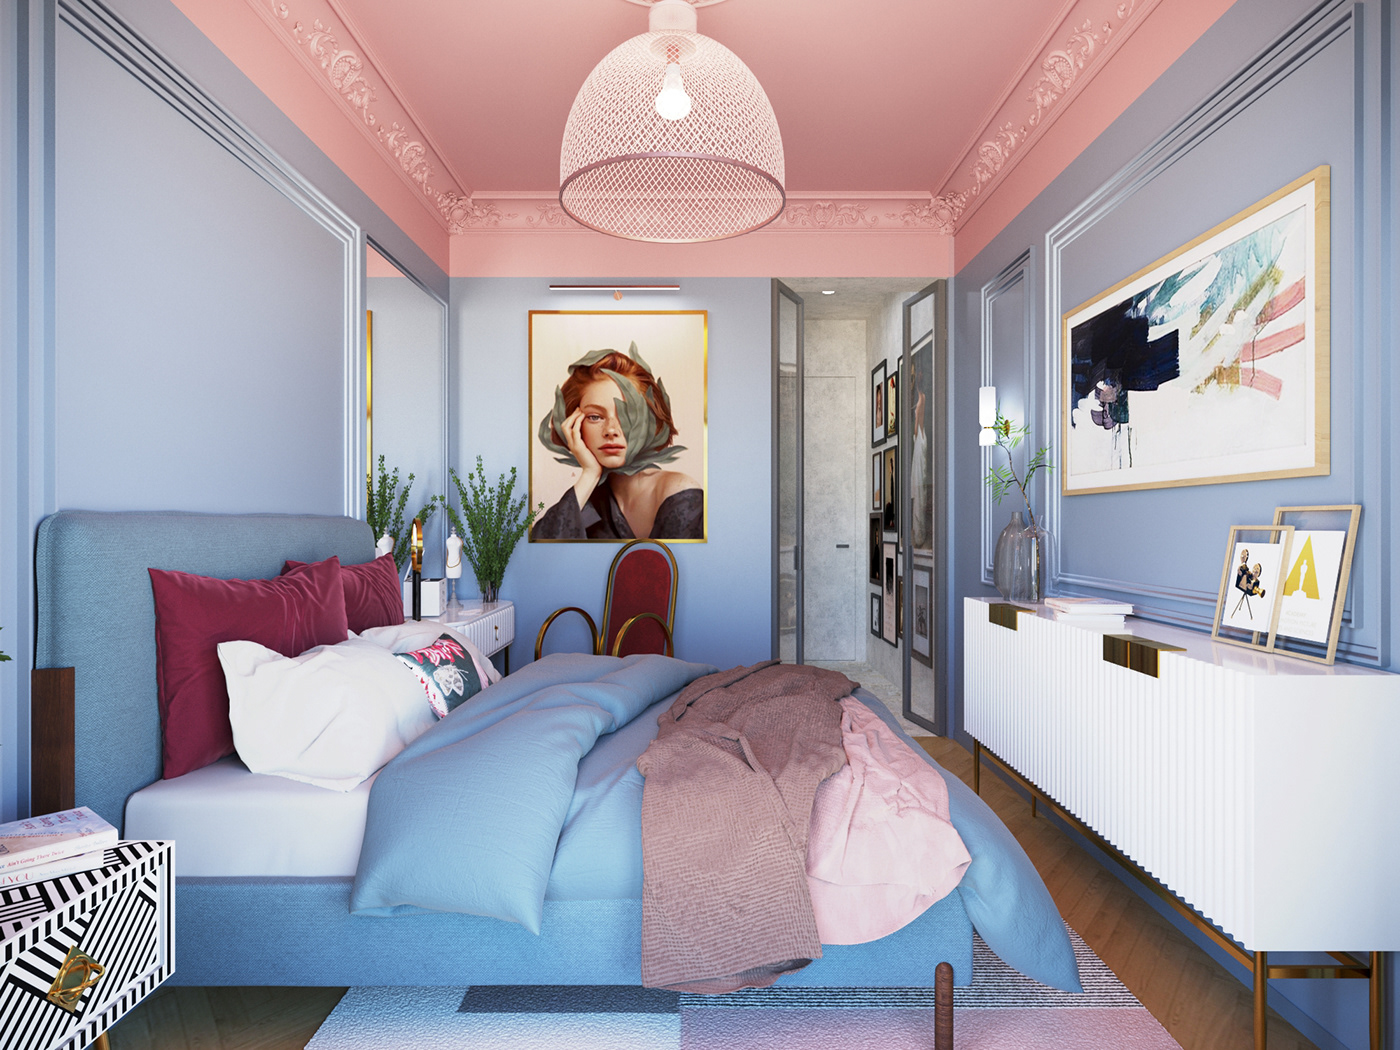 apartmentdesign bedroom Interior interiorapartment interiordesign visualization visualizer